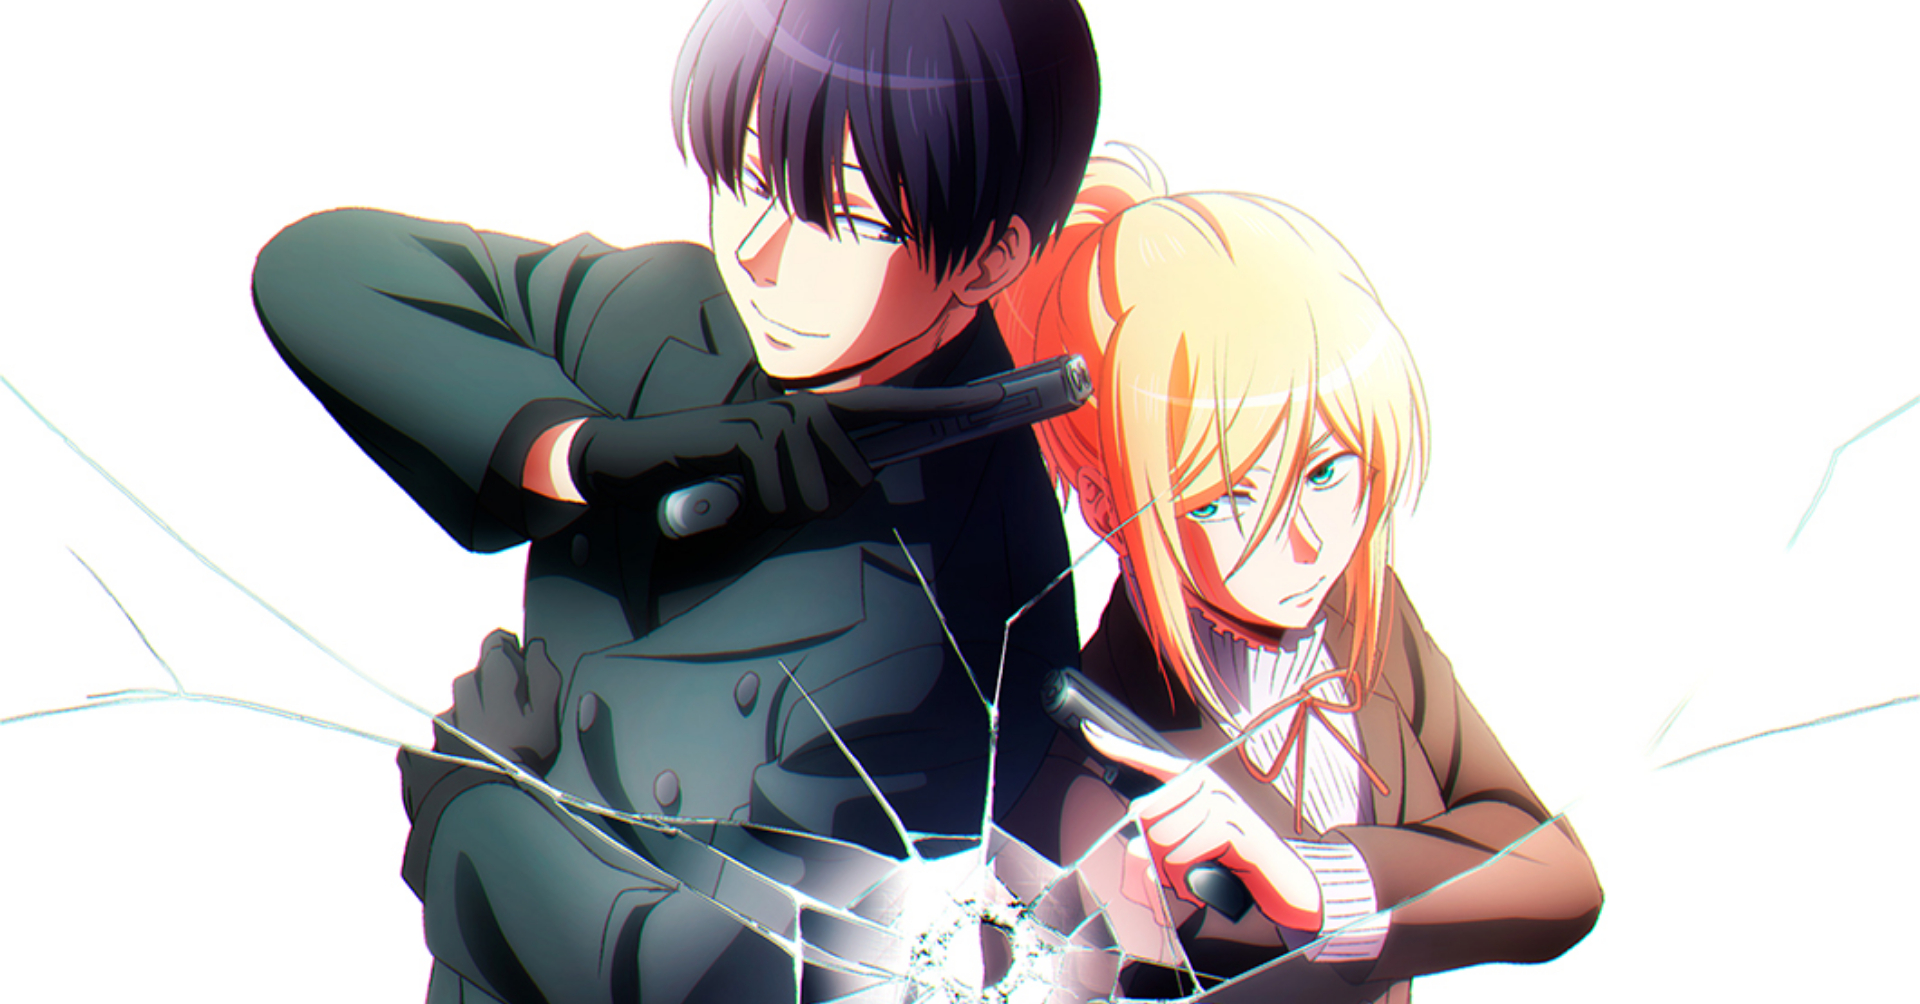 Koroshi Ai (Love of Kill), Anime & Manga